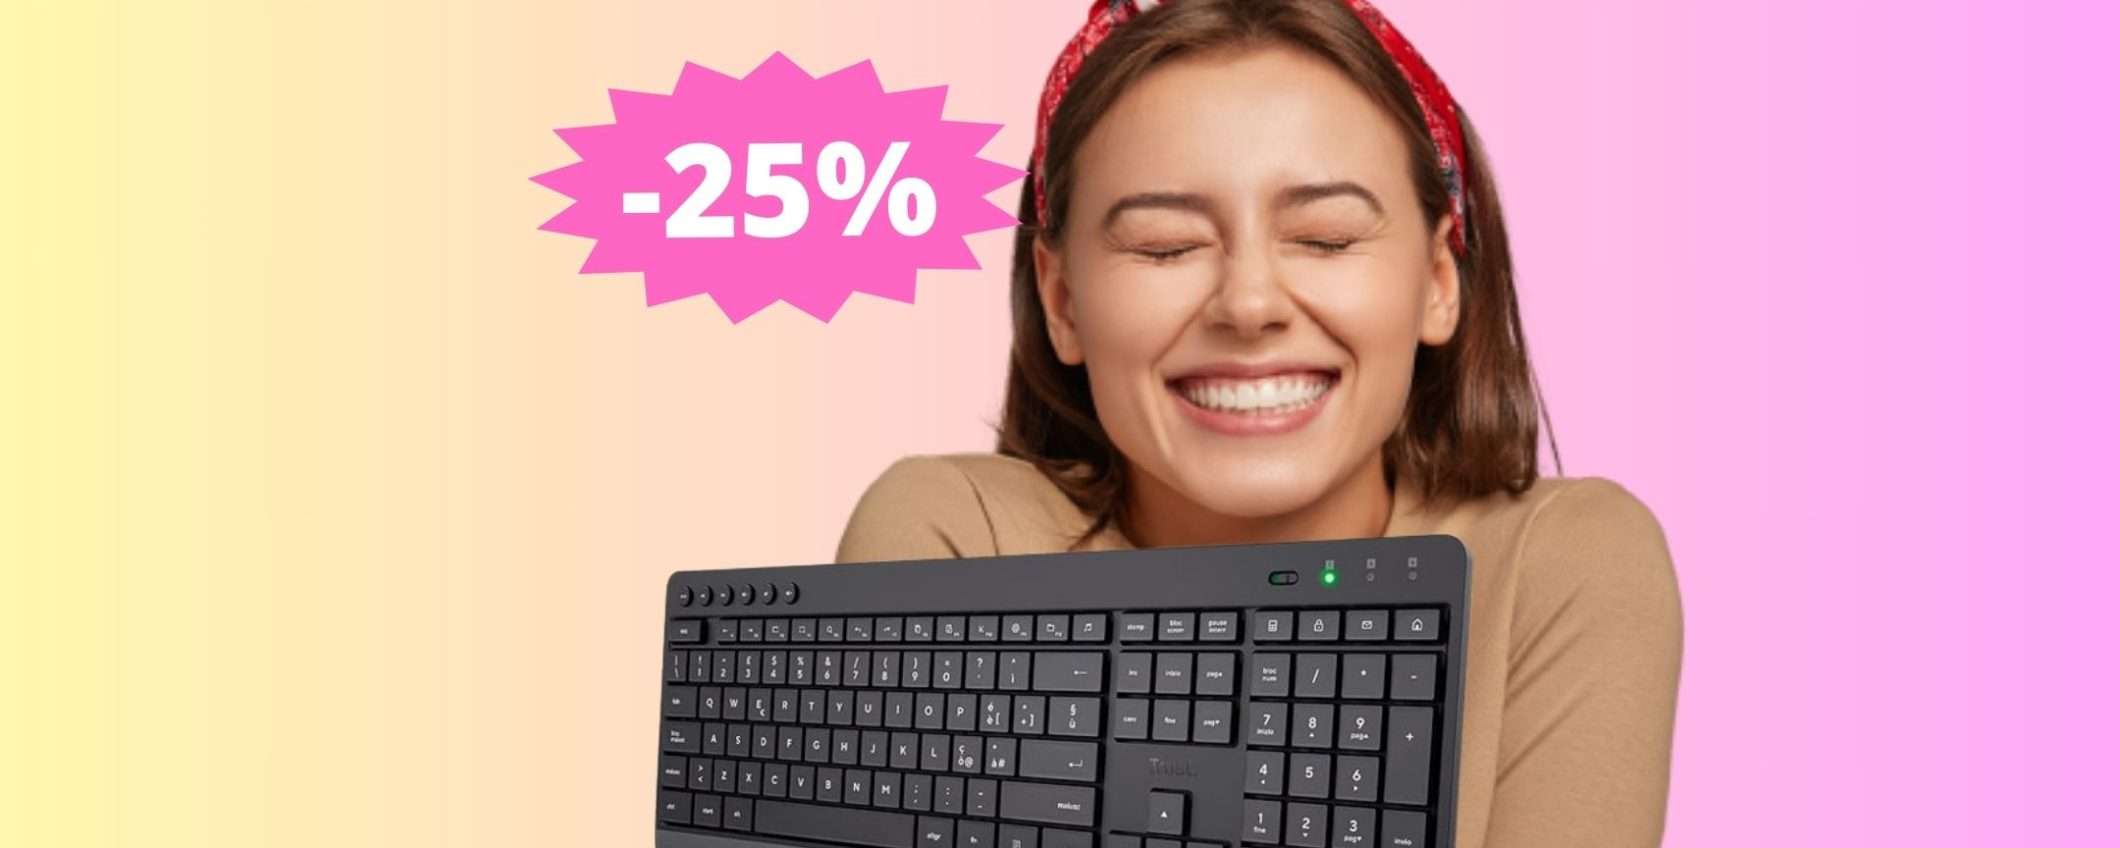 Trust Trezo mouse + tastiera: SUPER sconto del 25% su Amazon